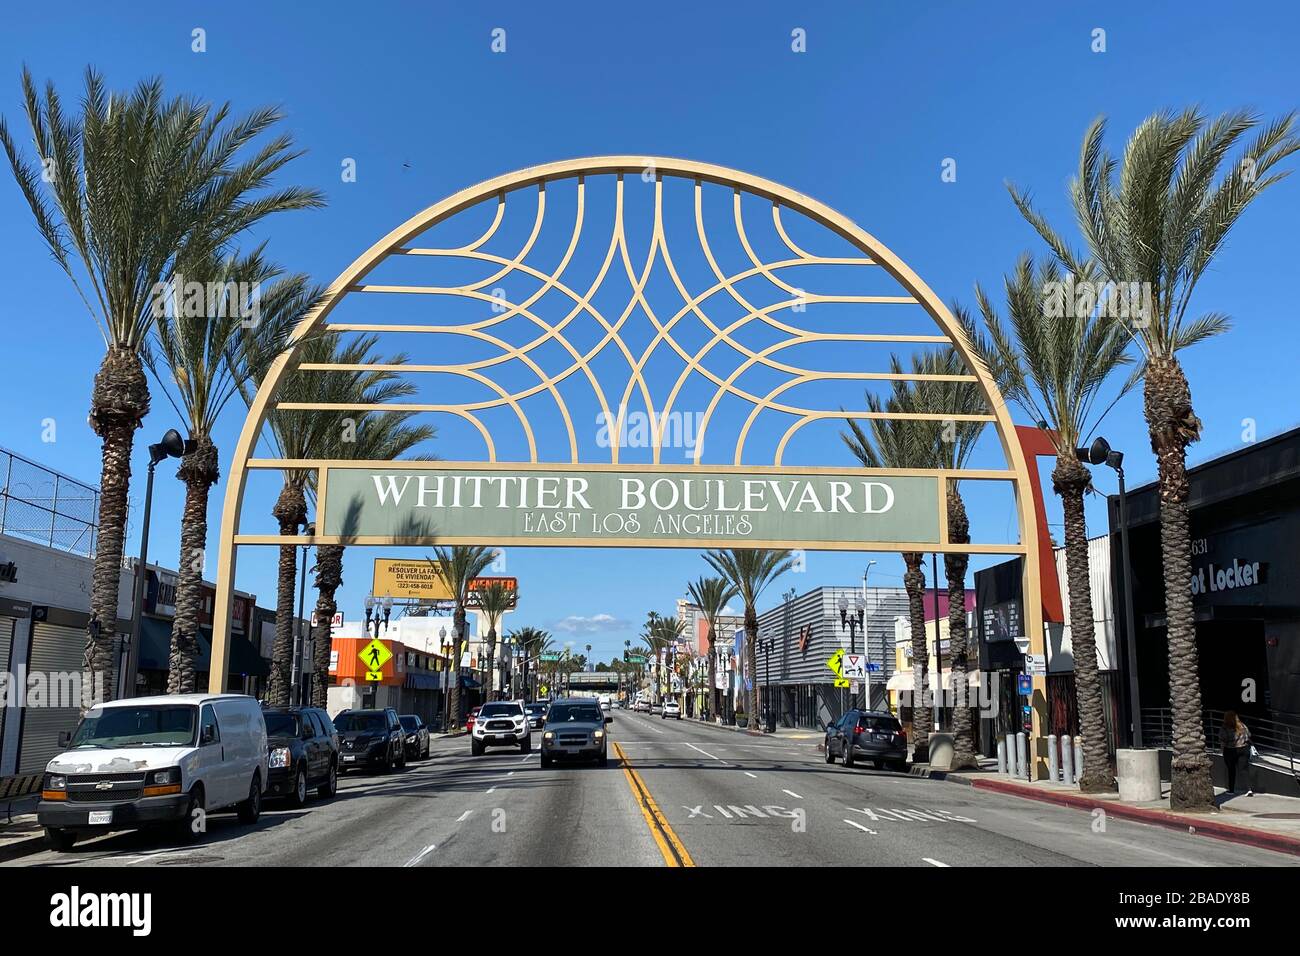 Visione generale del traffico limitato sotto il Whittier Blvd. Arch in mezzo al coroinavirus globale COVID-19 epidemia pandemica, Giovedi, 26 marzo 2020, a Los Angeles. (Foto di IOS/Espa-Images) Foto Stock